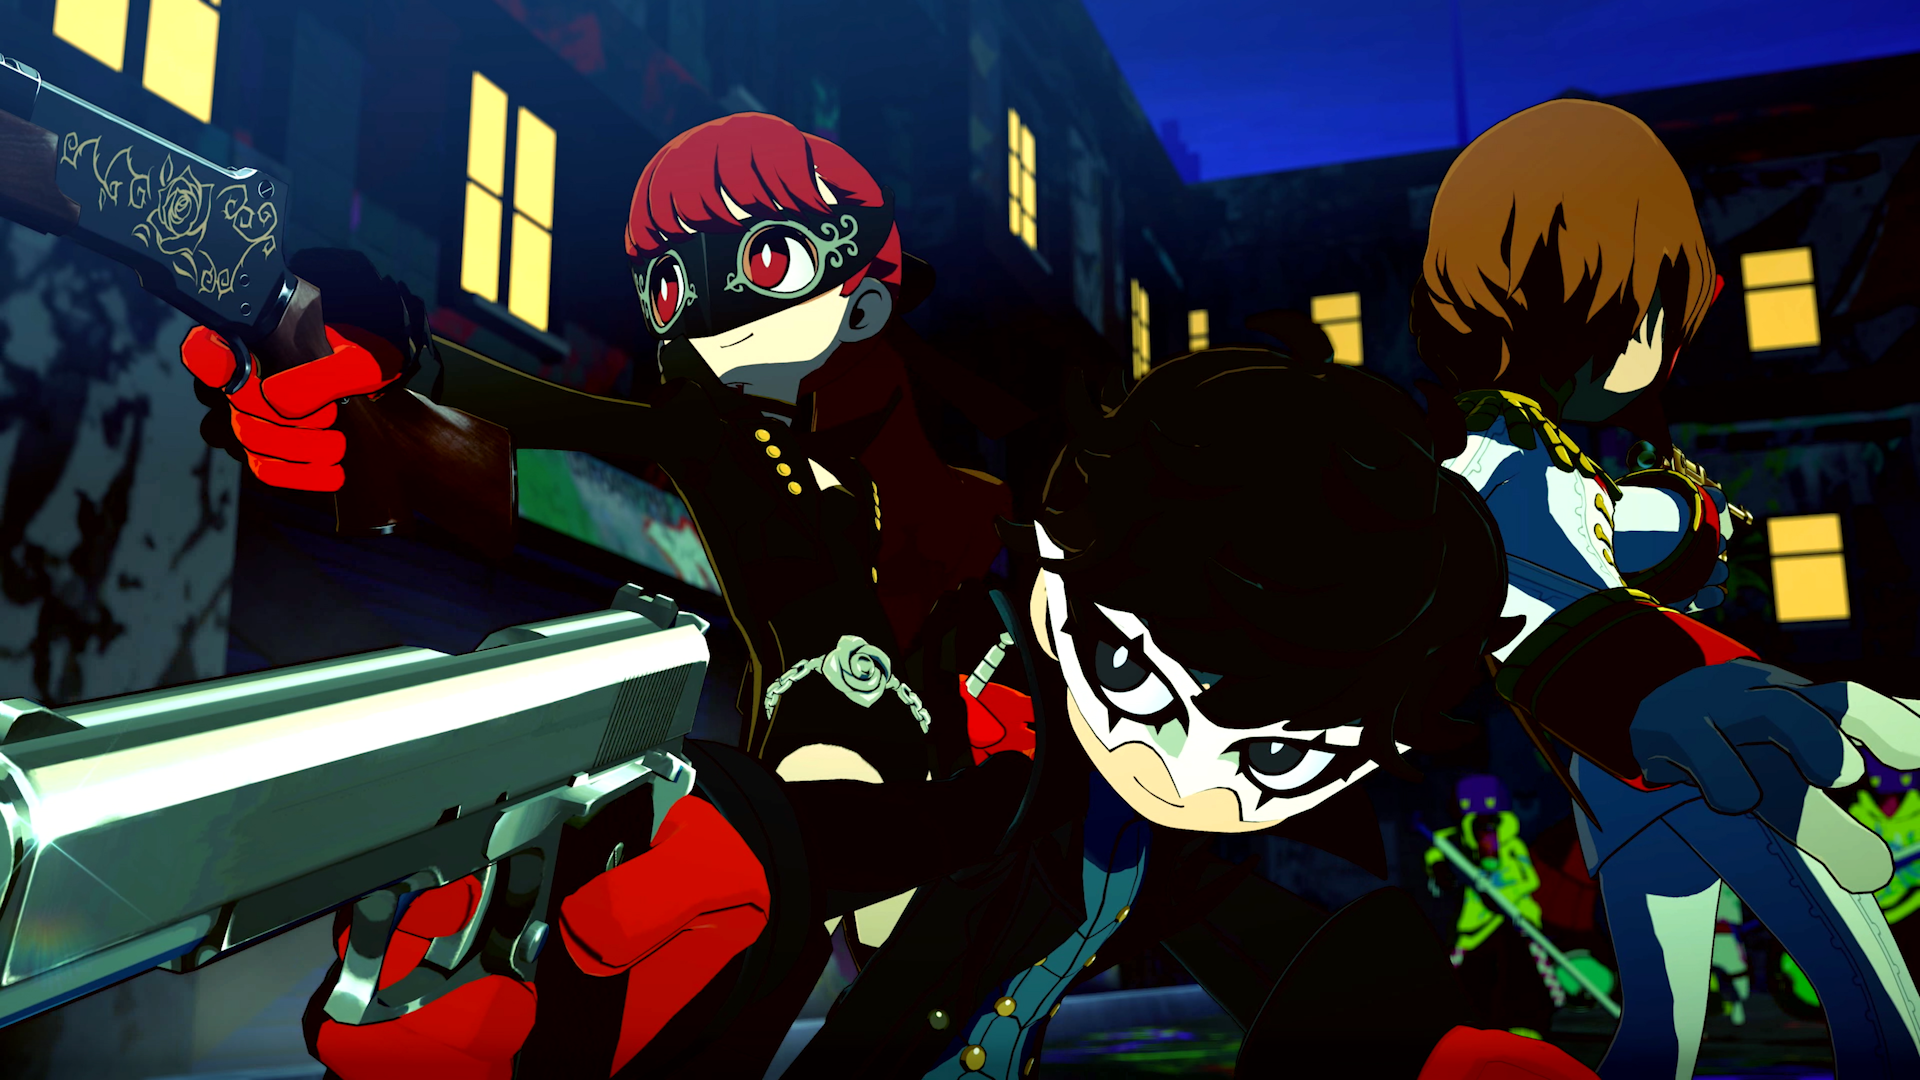 Persona 5 Tactica: Goro und Kasumi schaffen es doch ins Spiel